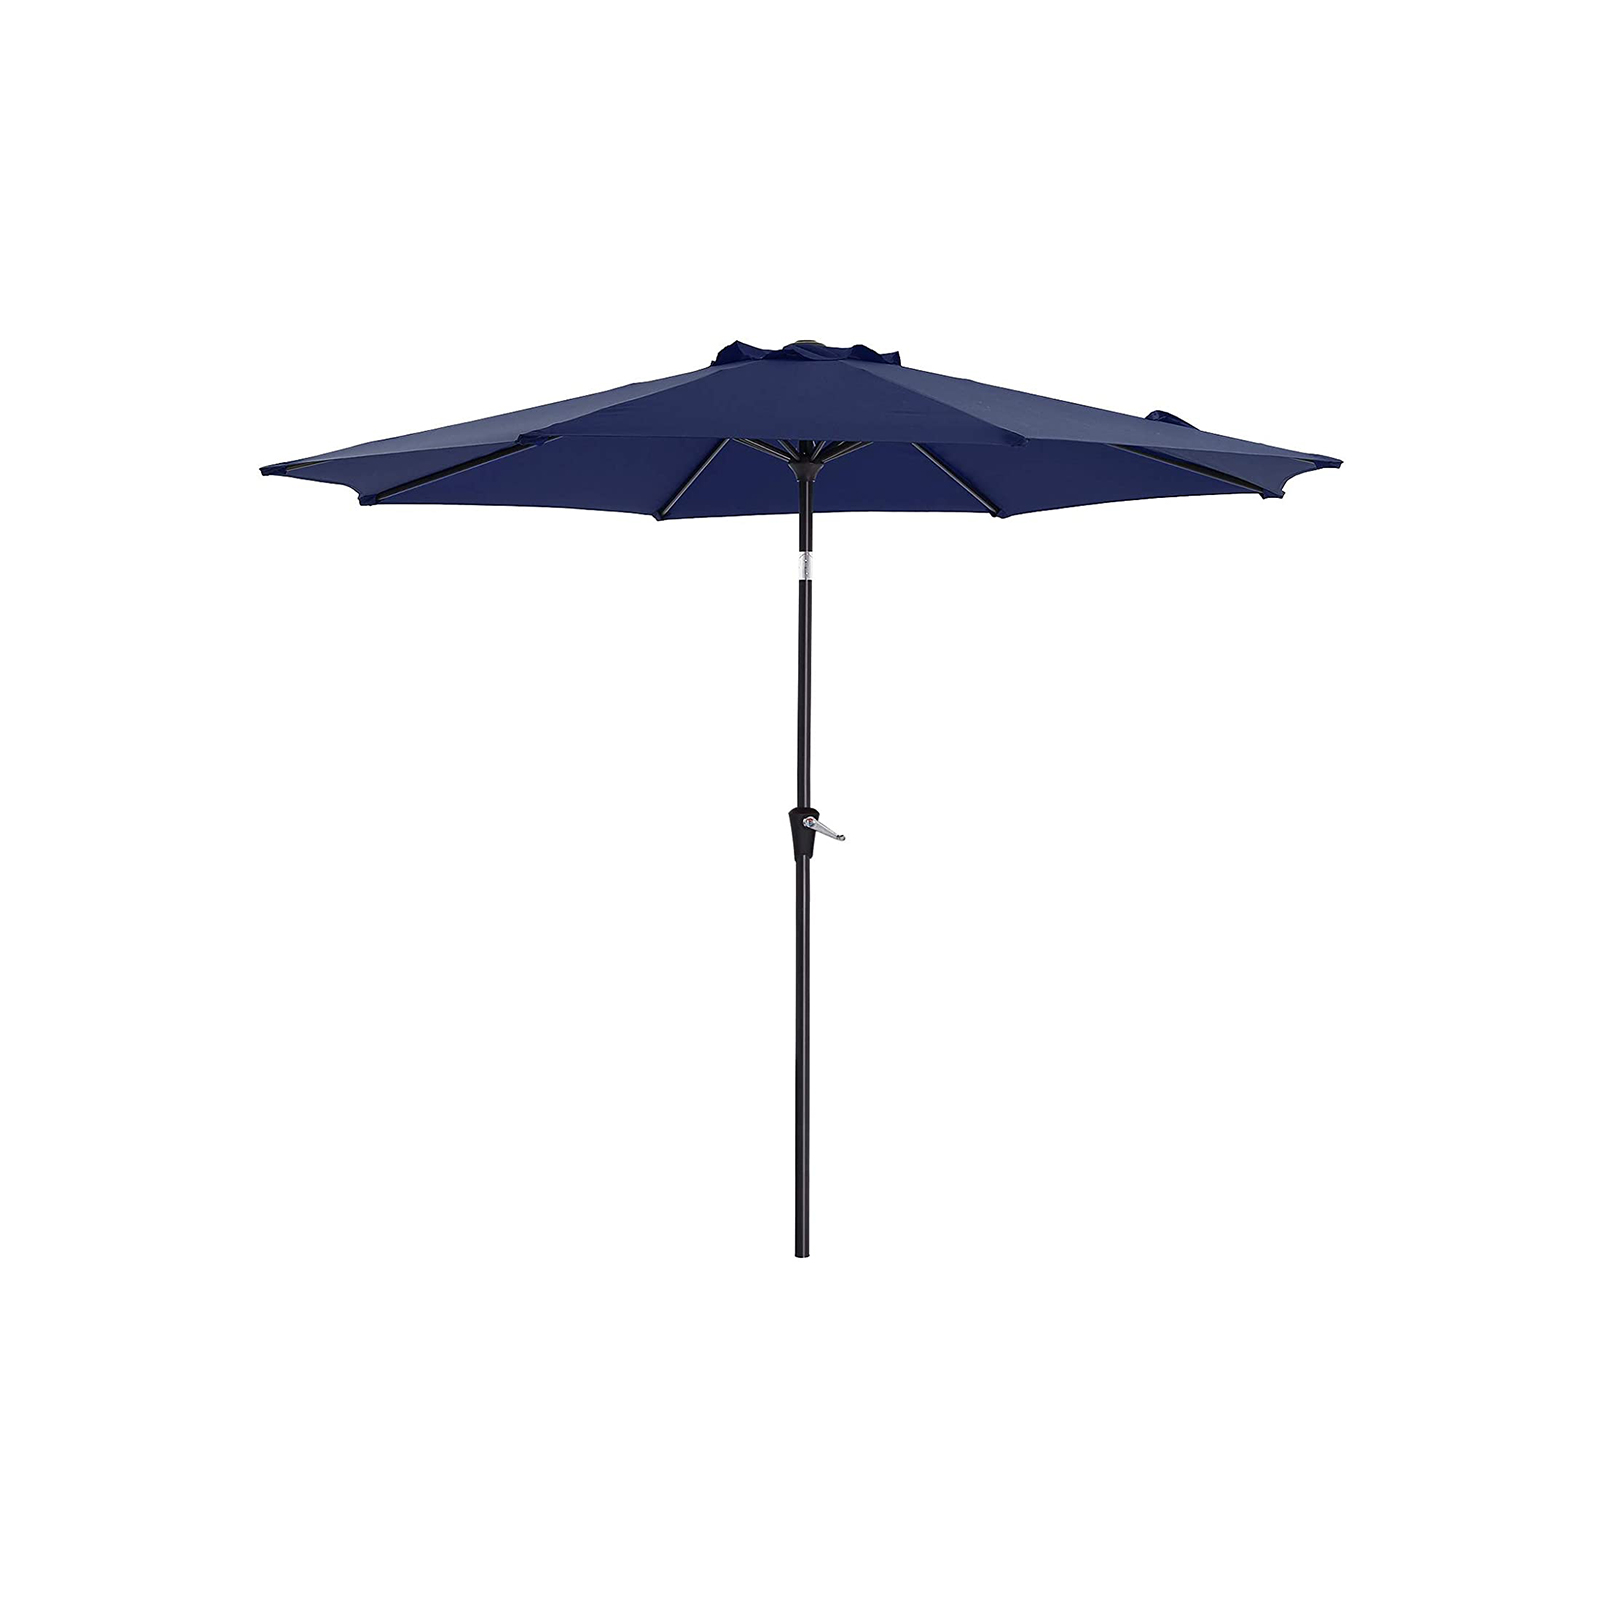 SONGMICS Patio Umbrella, 9 ft Outdoor Table Umbrella, 8 Ribs, UPF 50 ...